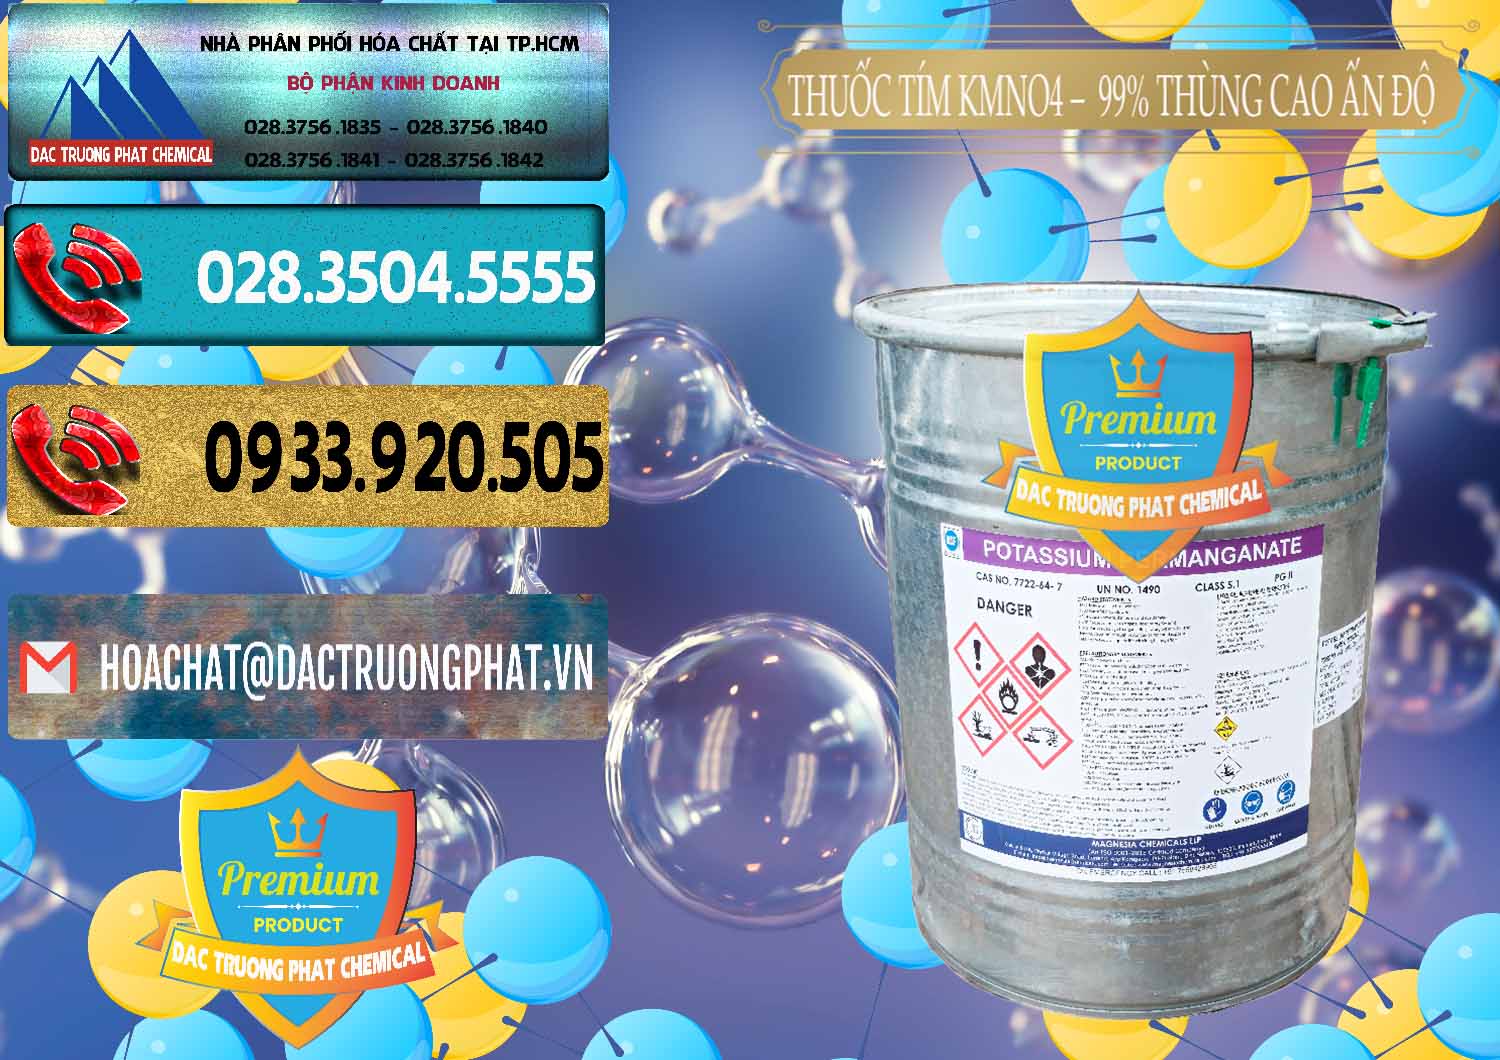 Công ty chuyên bán _ phân phối Thuốc Tím - KMNO4 Thùng Cao 99% Magnesia Chemicals Ấn Độ India - 0164 - Nhập khẩu & cung cấp hóa chất tại TP.HCM - hoachatdetnhuom.com